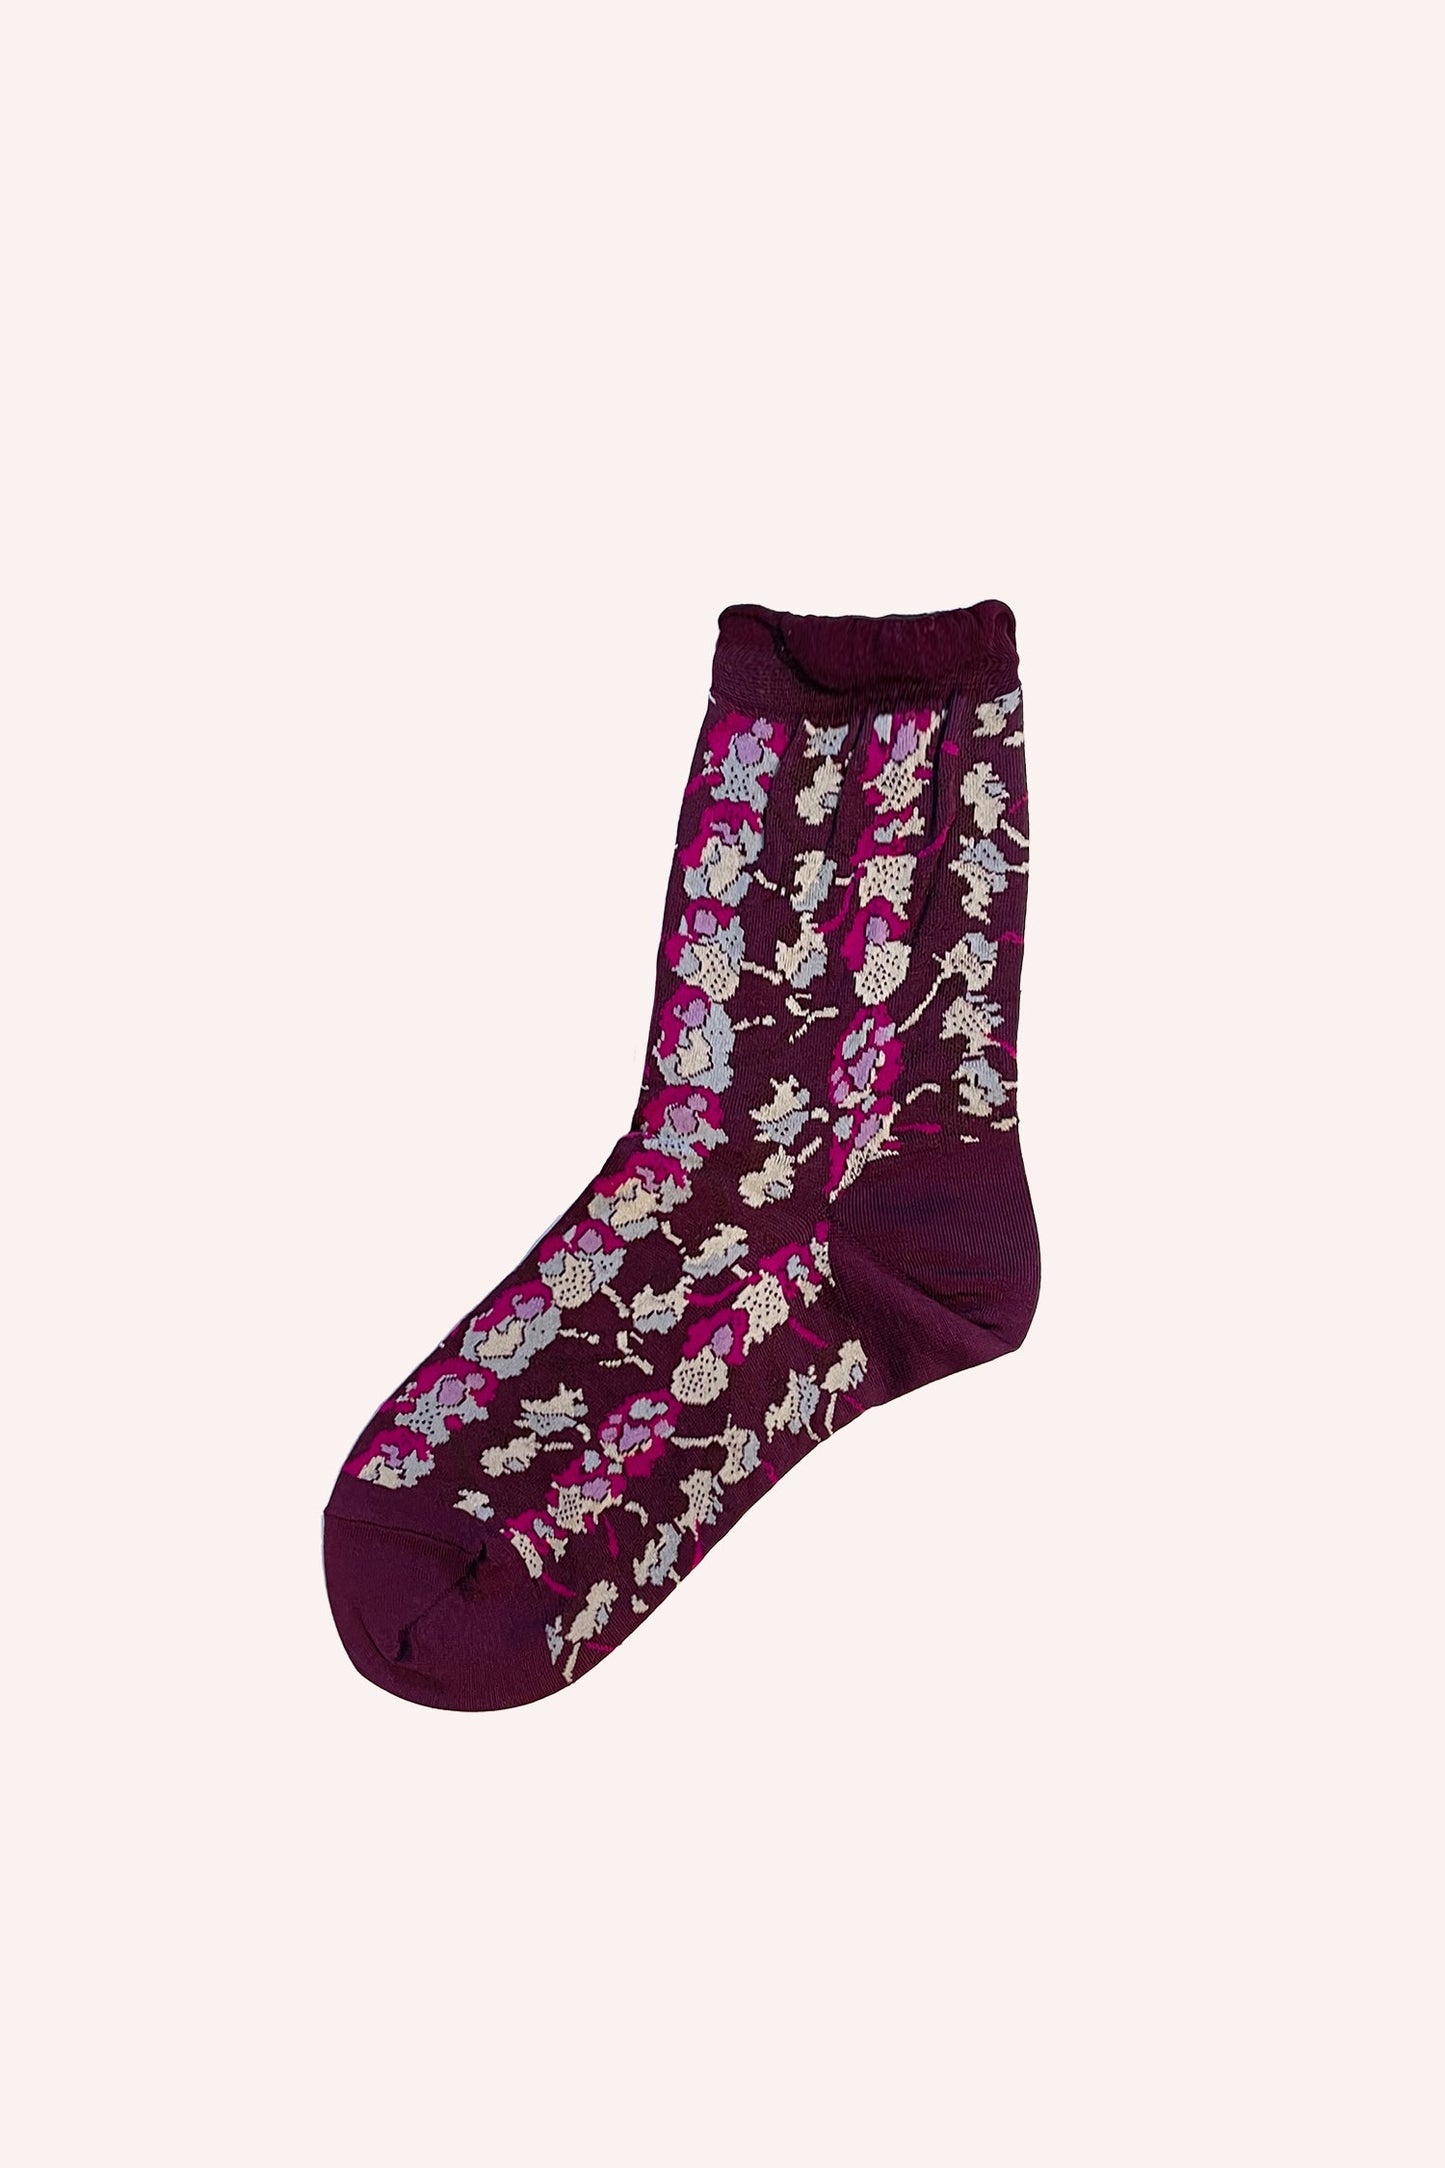 Floral Stripe Socks Boysenberry color, short socks, white and pink floral pattern design